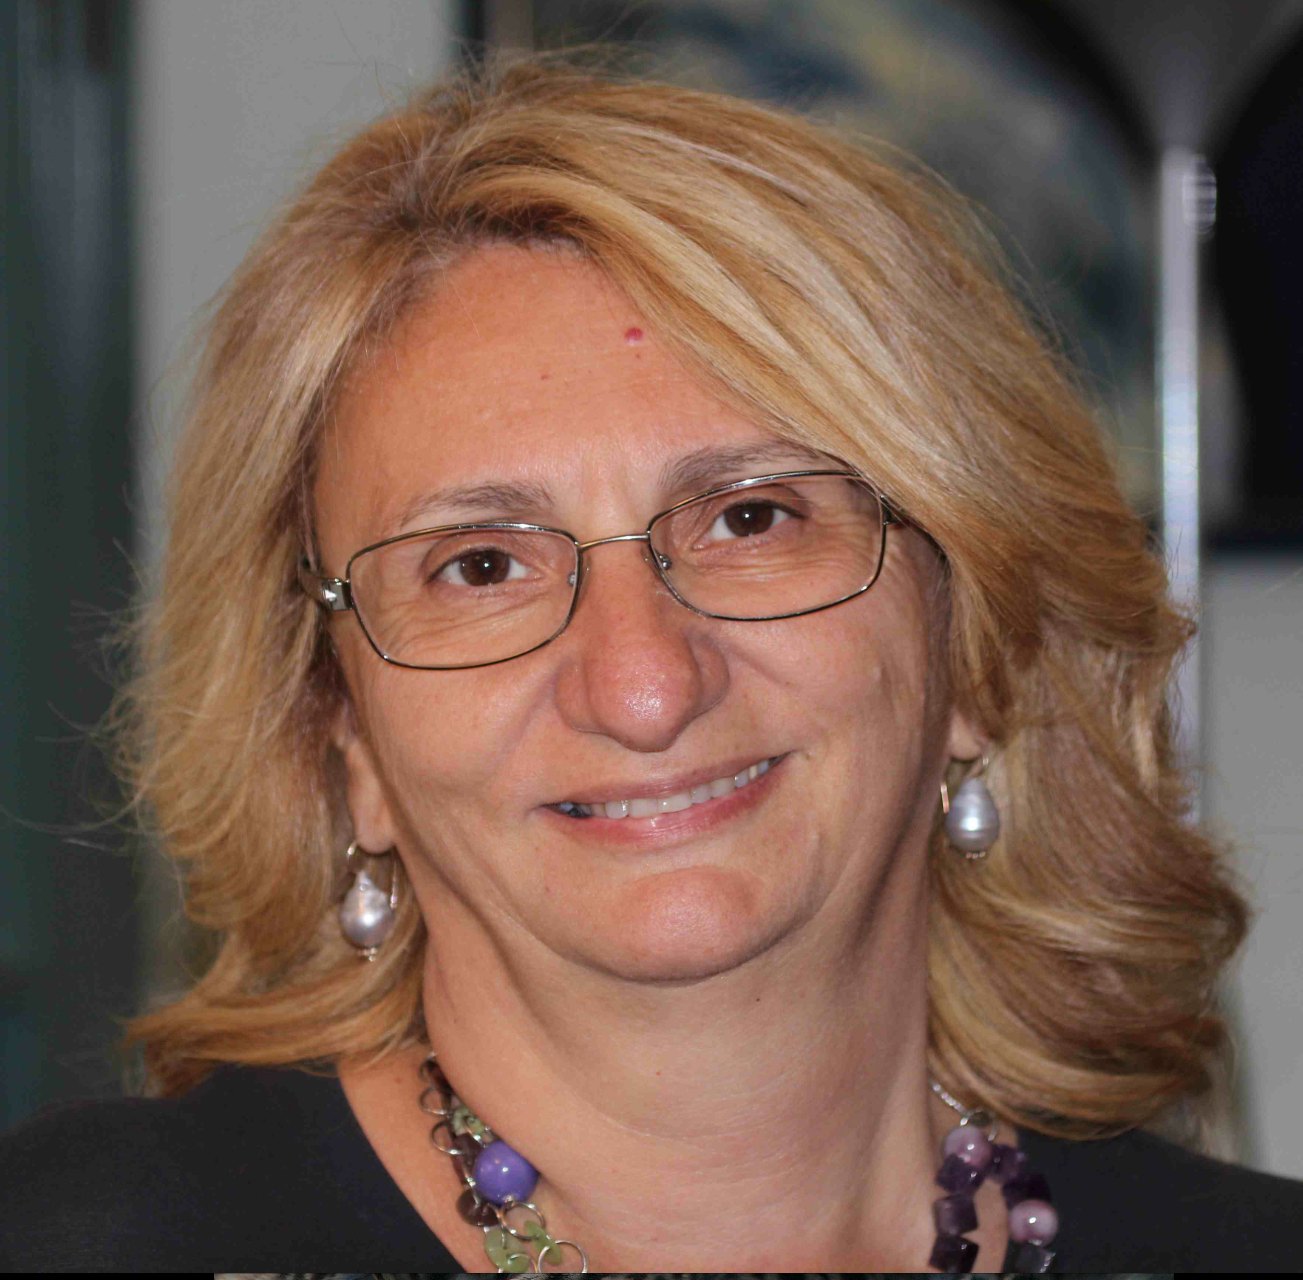 La relatrice prof.ssa Cristina Mussini